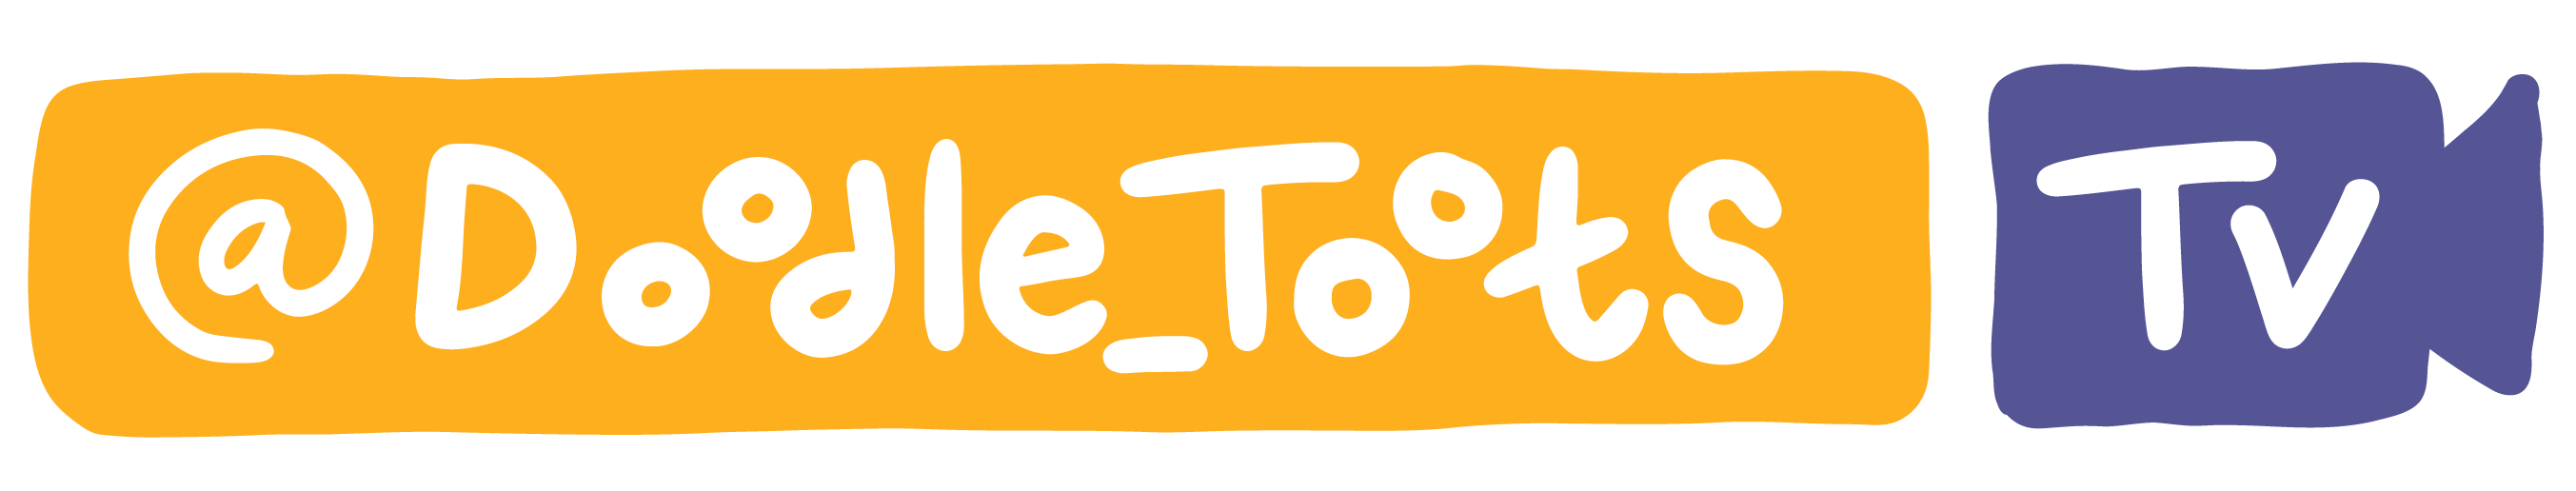 DoodleToots-TV-Logo-FullColor - Copy